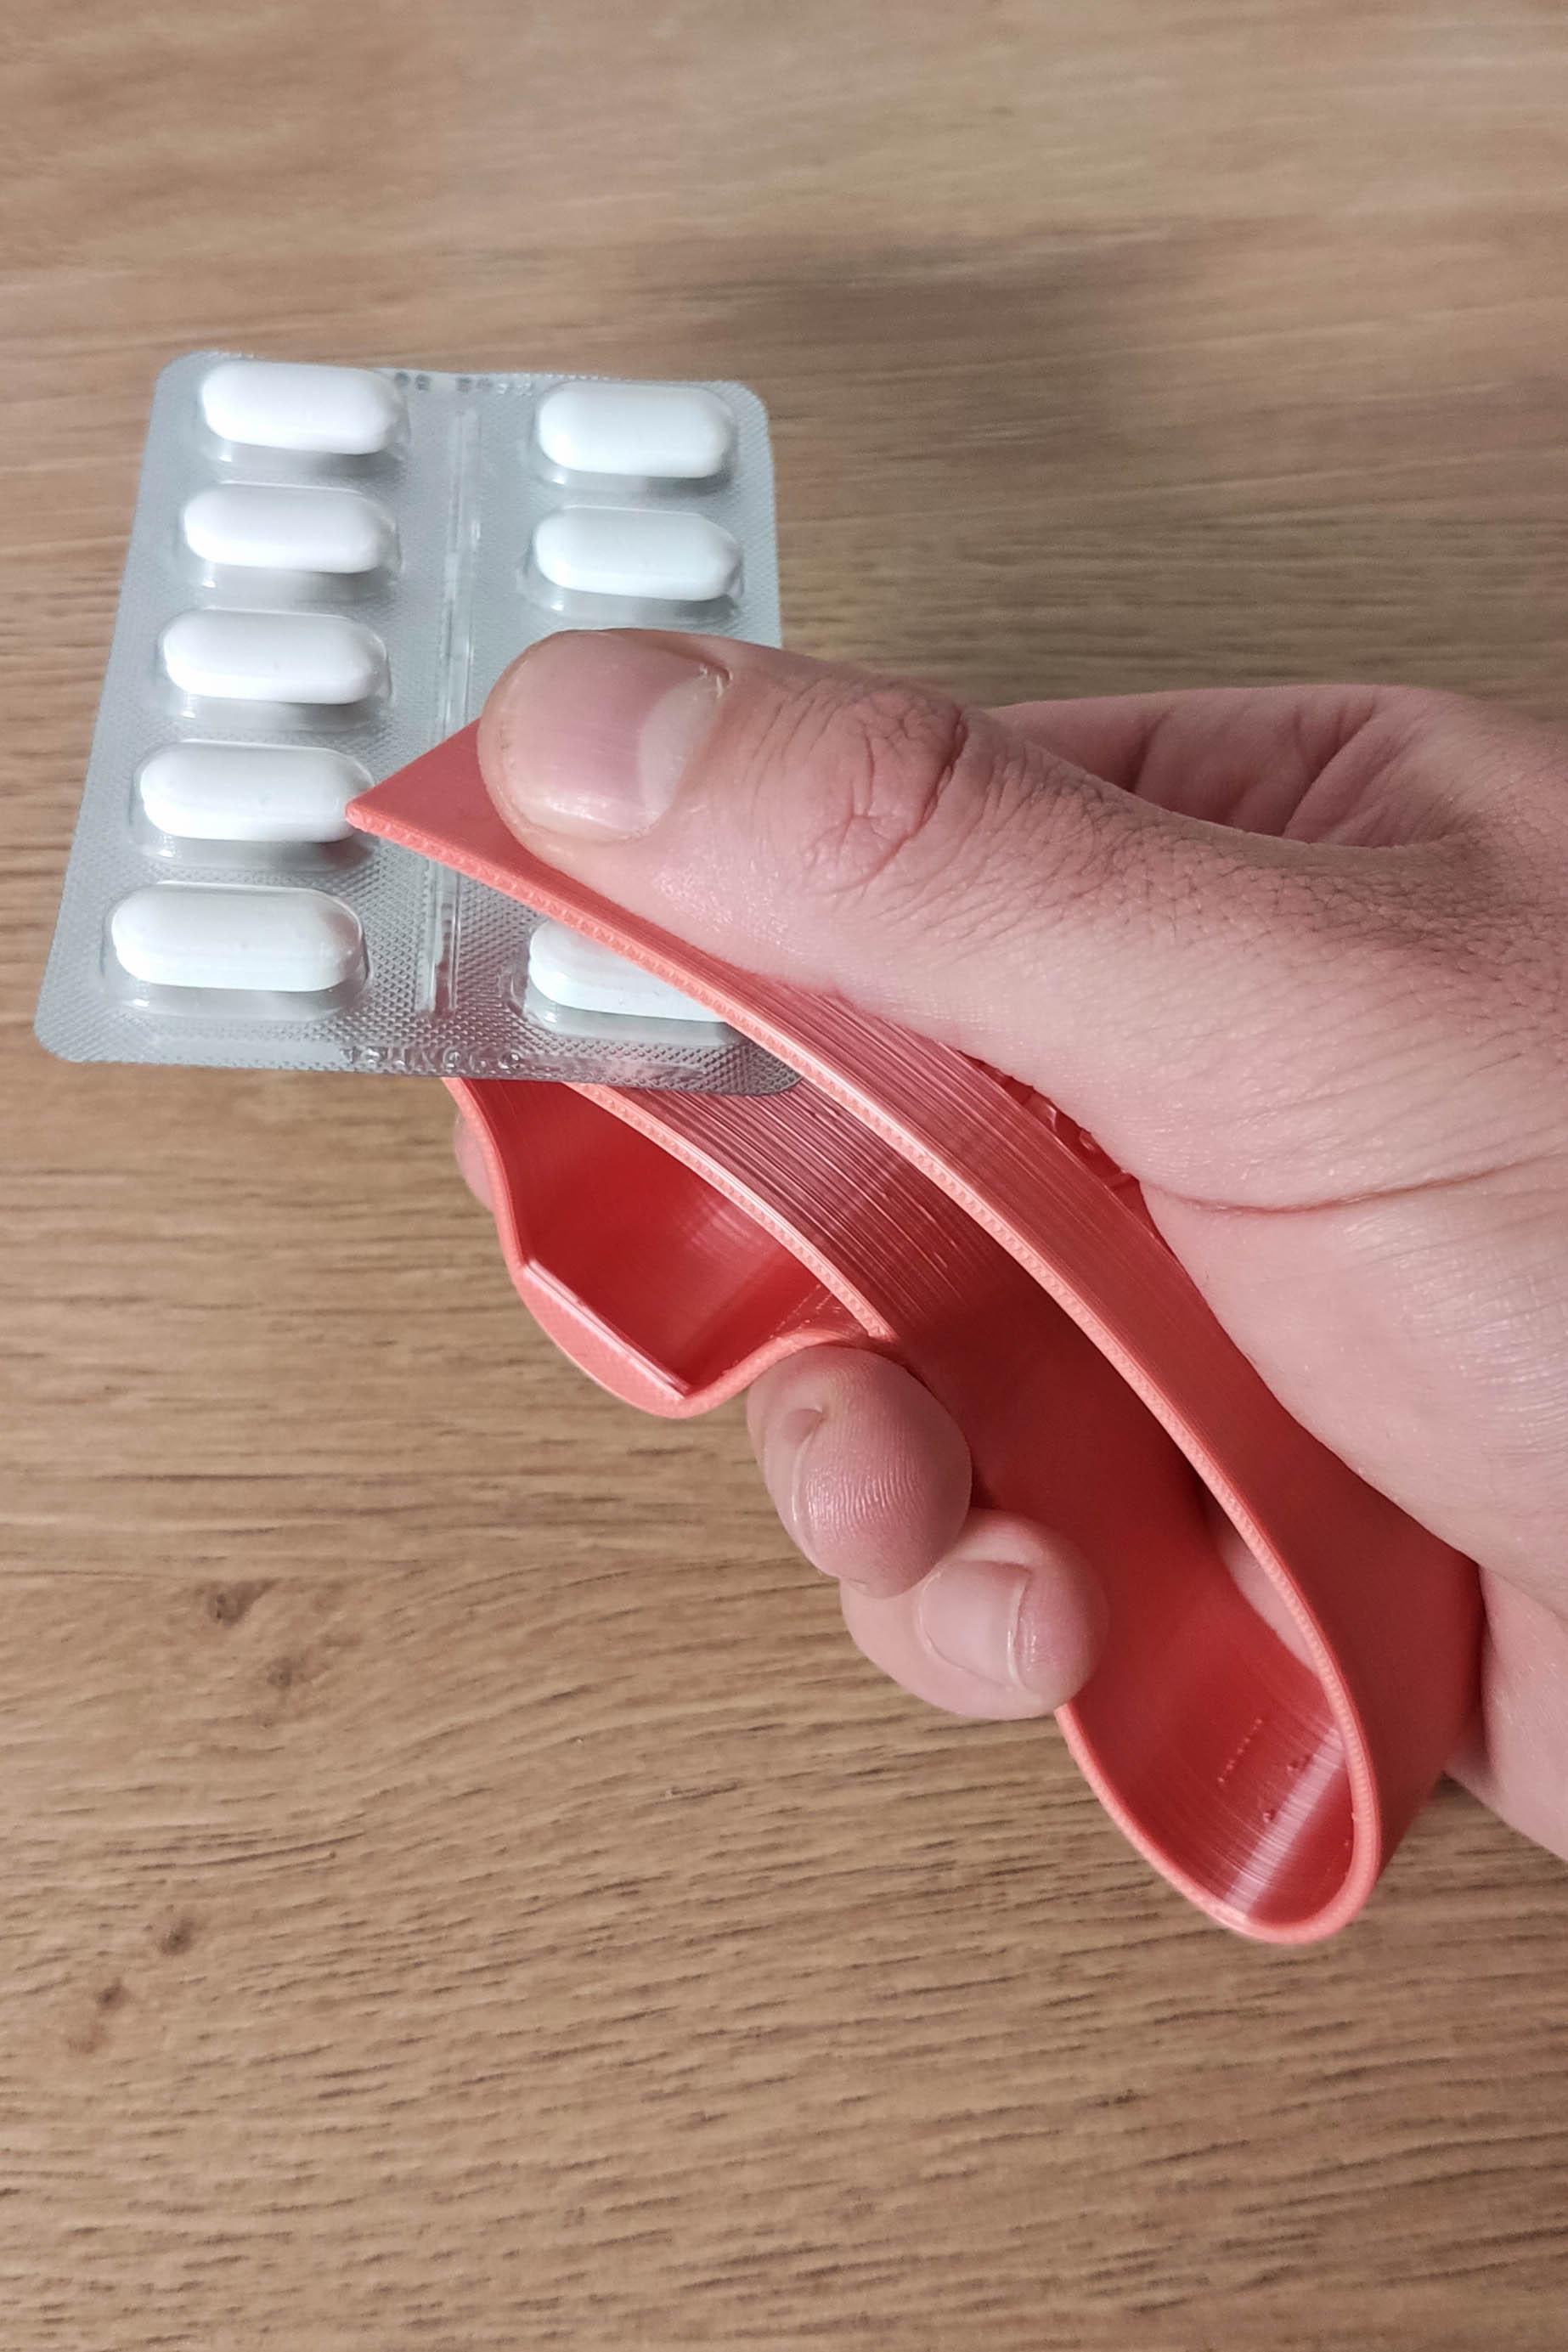 Pillikan - Easy to print pill puncher 3d model